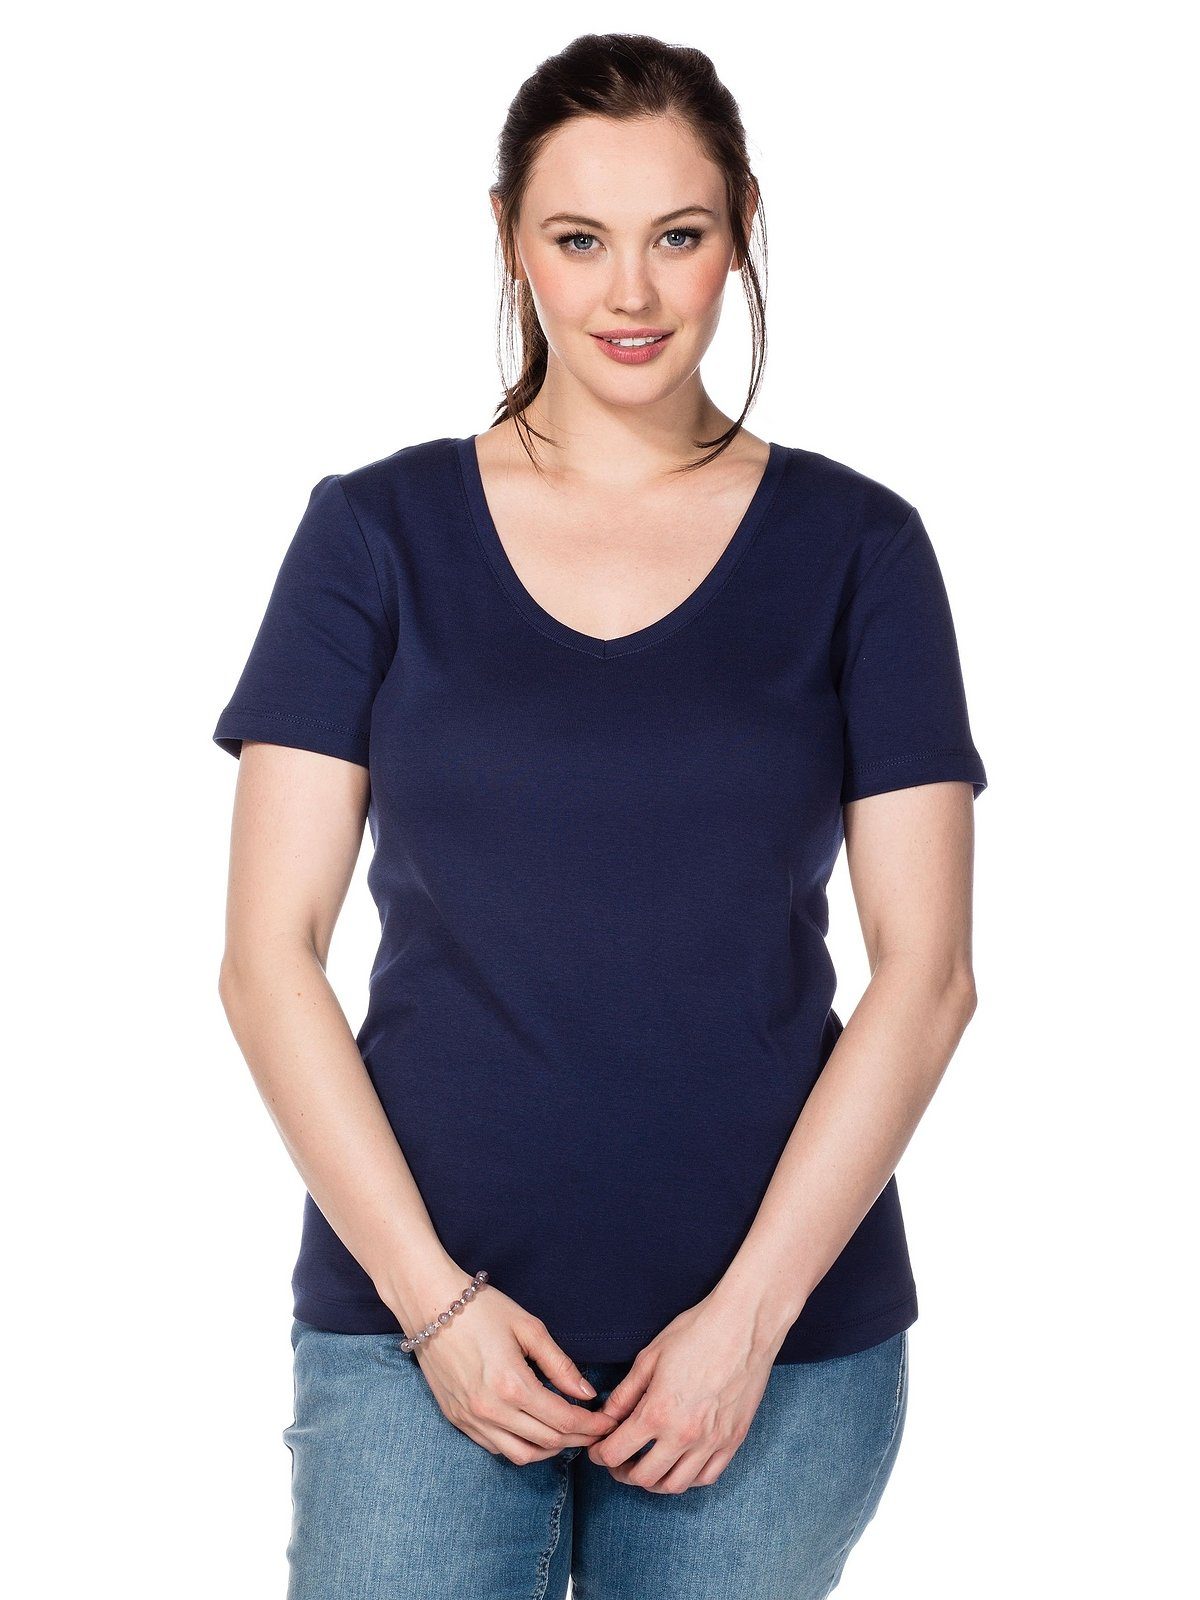 Sheego T-Shirt Große marine Größen aus fein gerippter Qualität